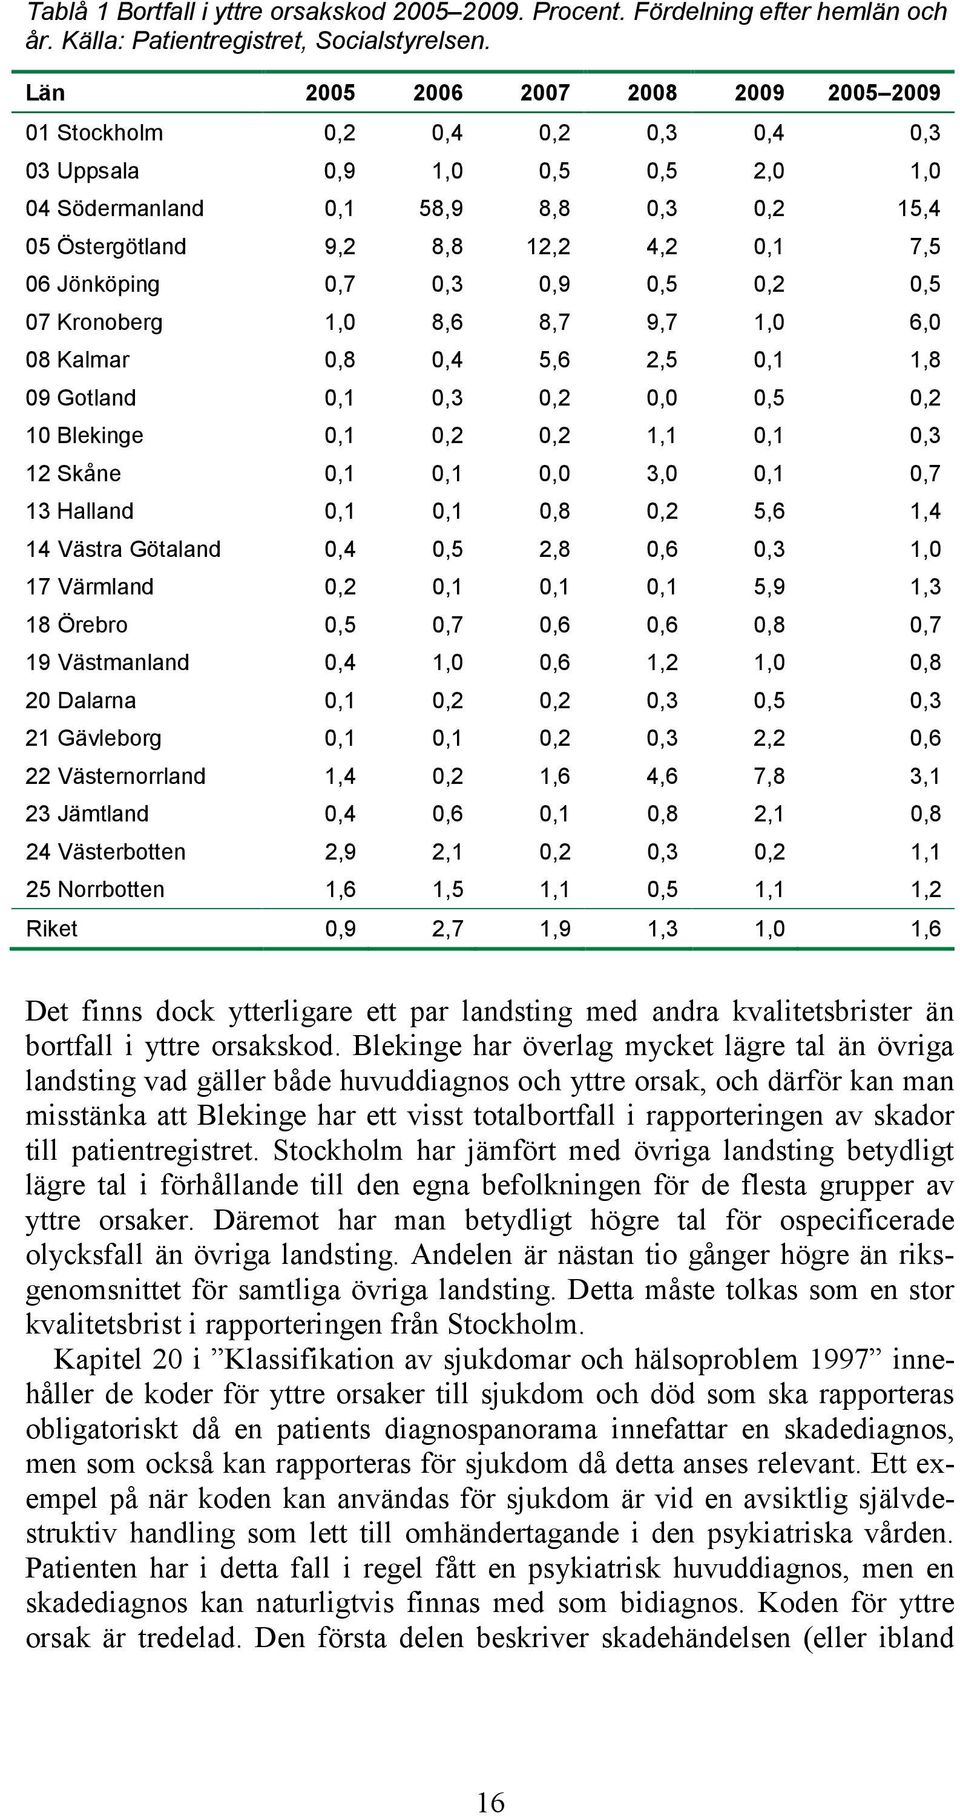 Jönköping 0,7 0,3 0,9 0,5 0,2 0,5 07 Kronoberg 1,0 8,6 8,7 9,7 1,0 6,0 08 Kalmar 0,8 0,4 5,6 2,5 0,1 1,8 09 Gotland 0,1 0,3 0,2 0,0 0,5 0,2 10 Blekinge 0,1 0,2 0,2 1,1 0,1 0,3 12 Skåne 0,1 0,1 0,0